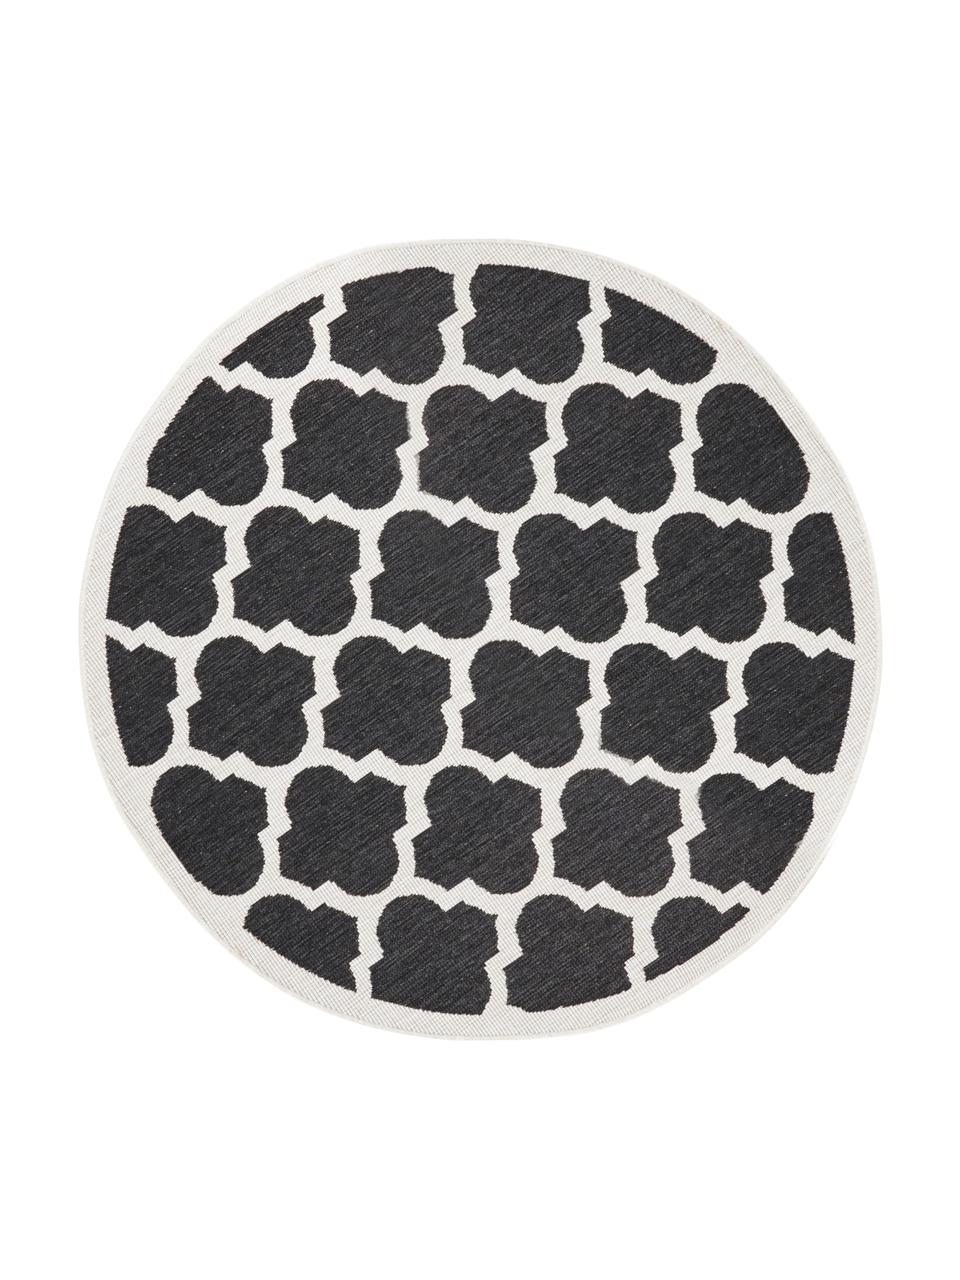 Okrúhly obojstranný koberec do interiéru/exteriéru Palermo, Čierna, krémová